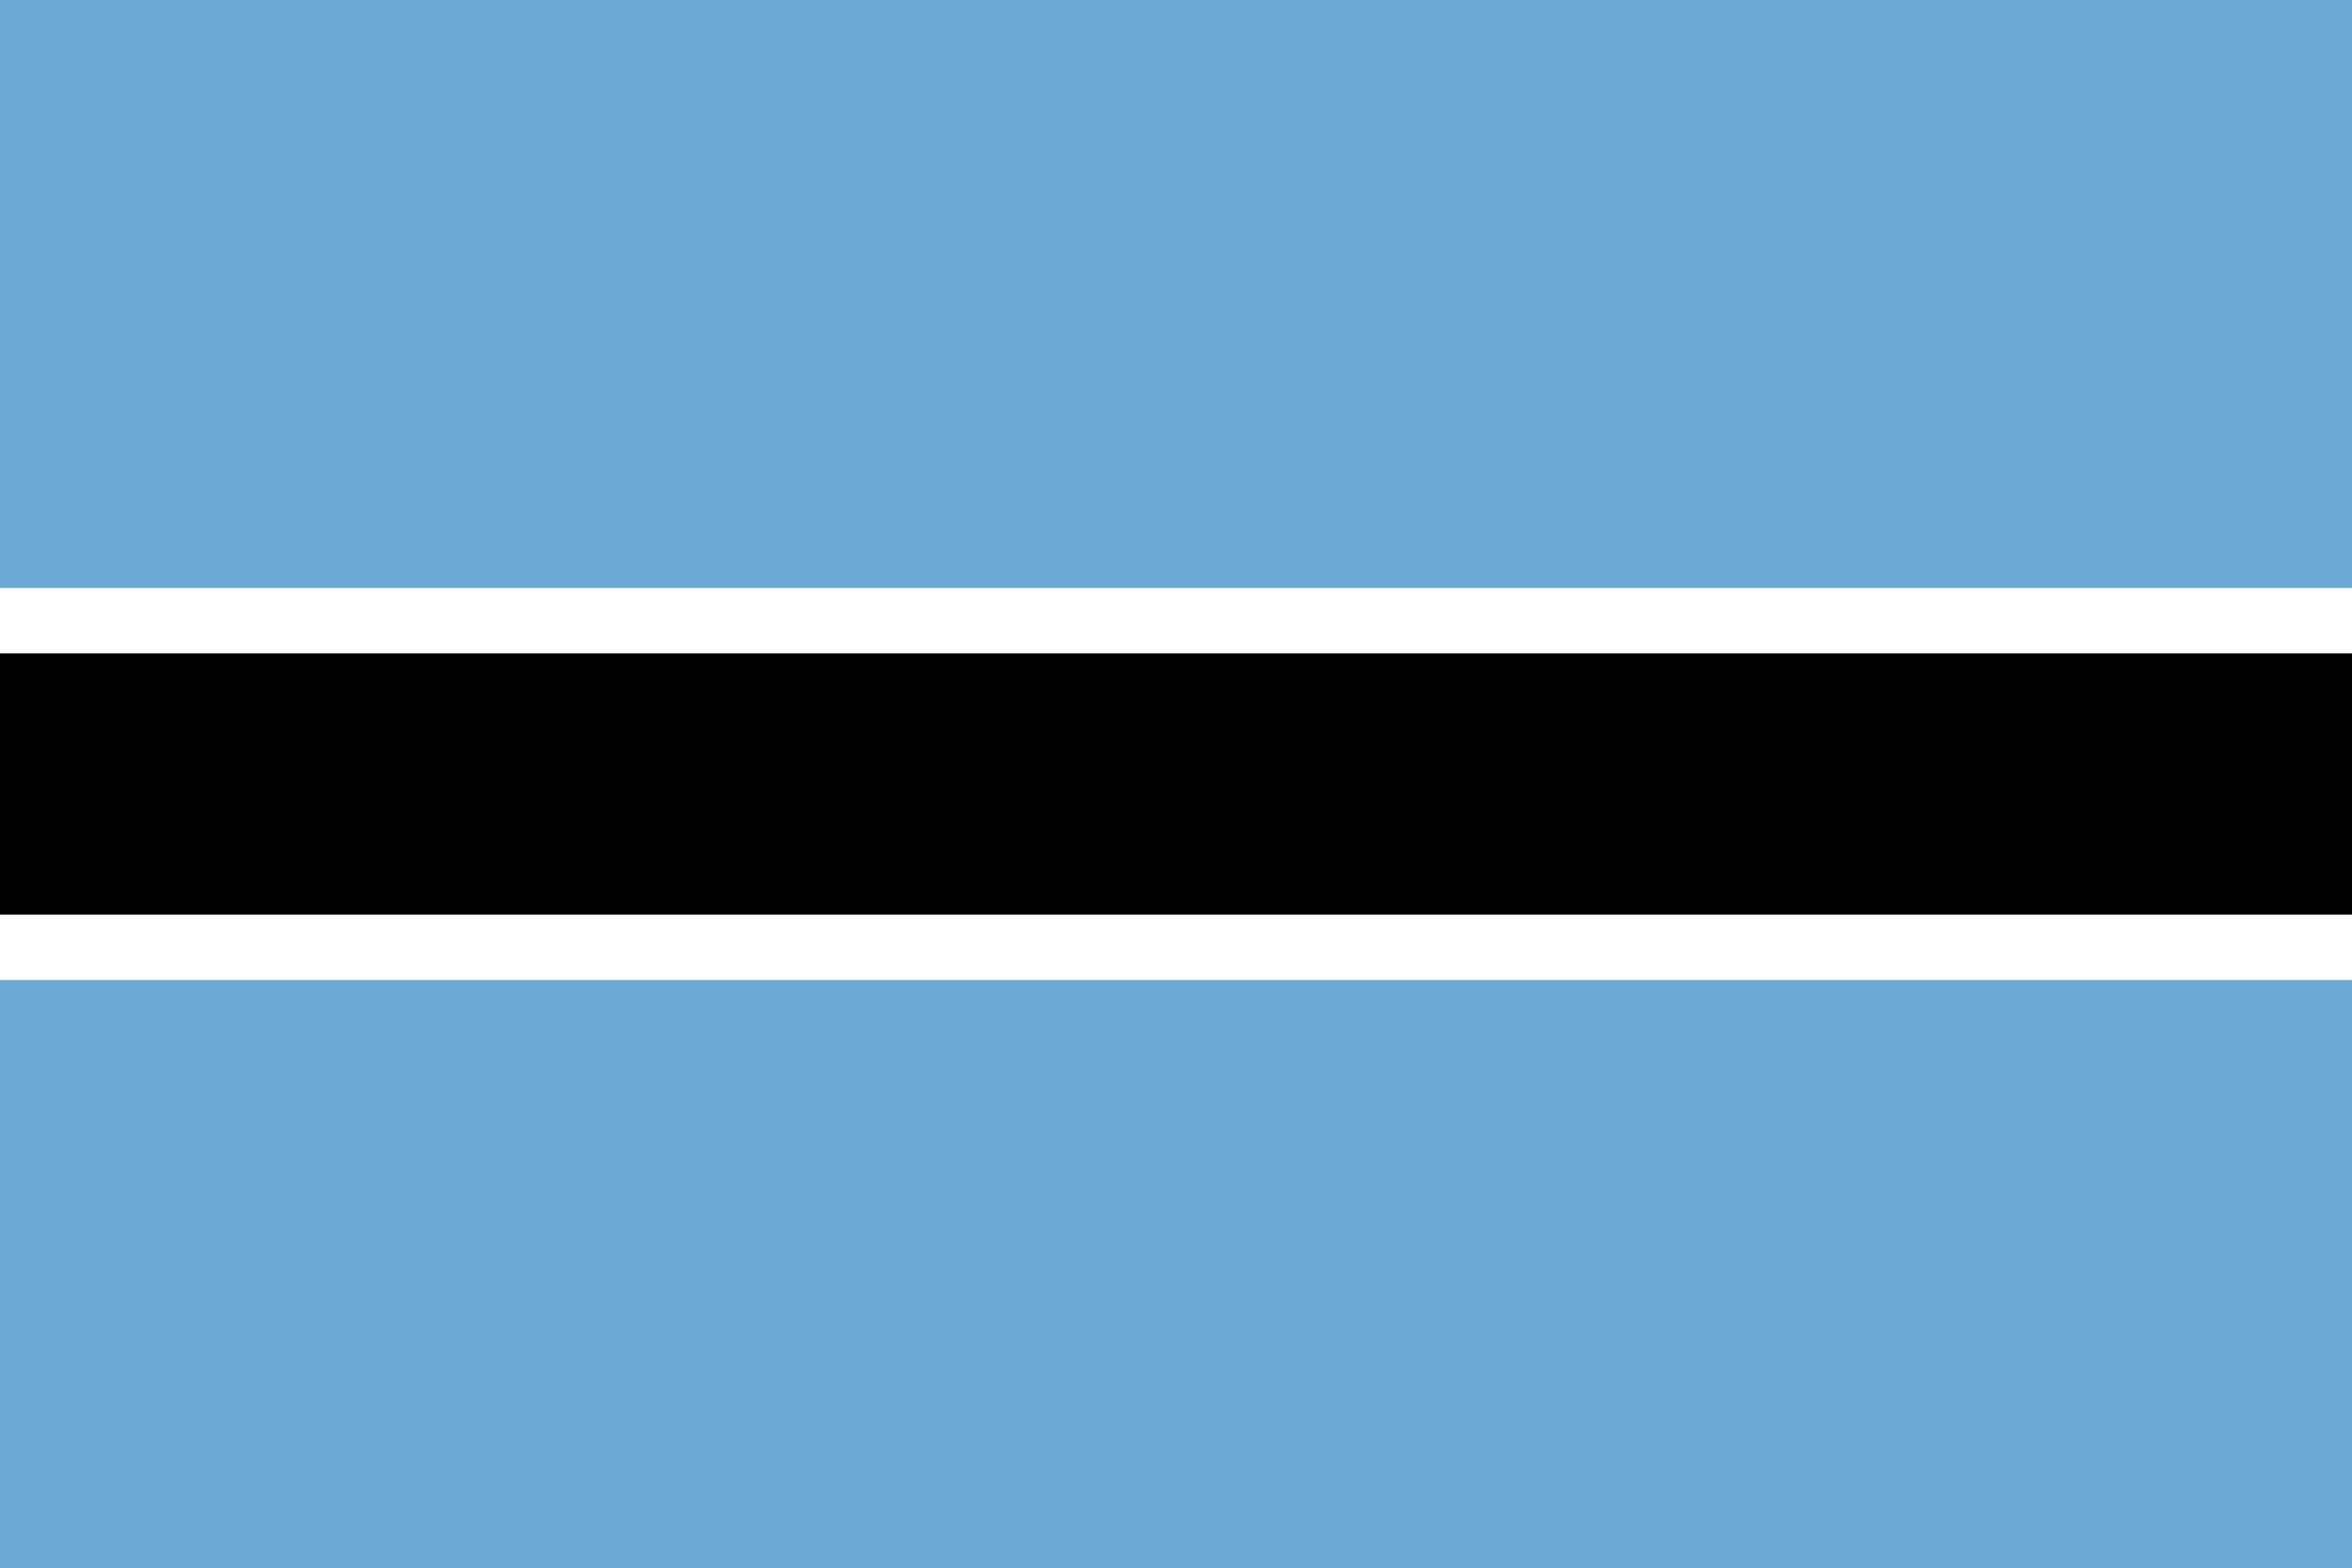 Botswana Flag Image - Free Download